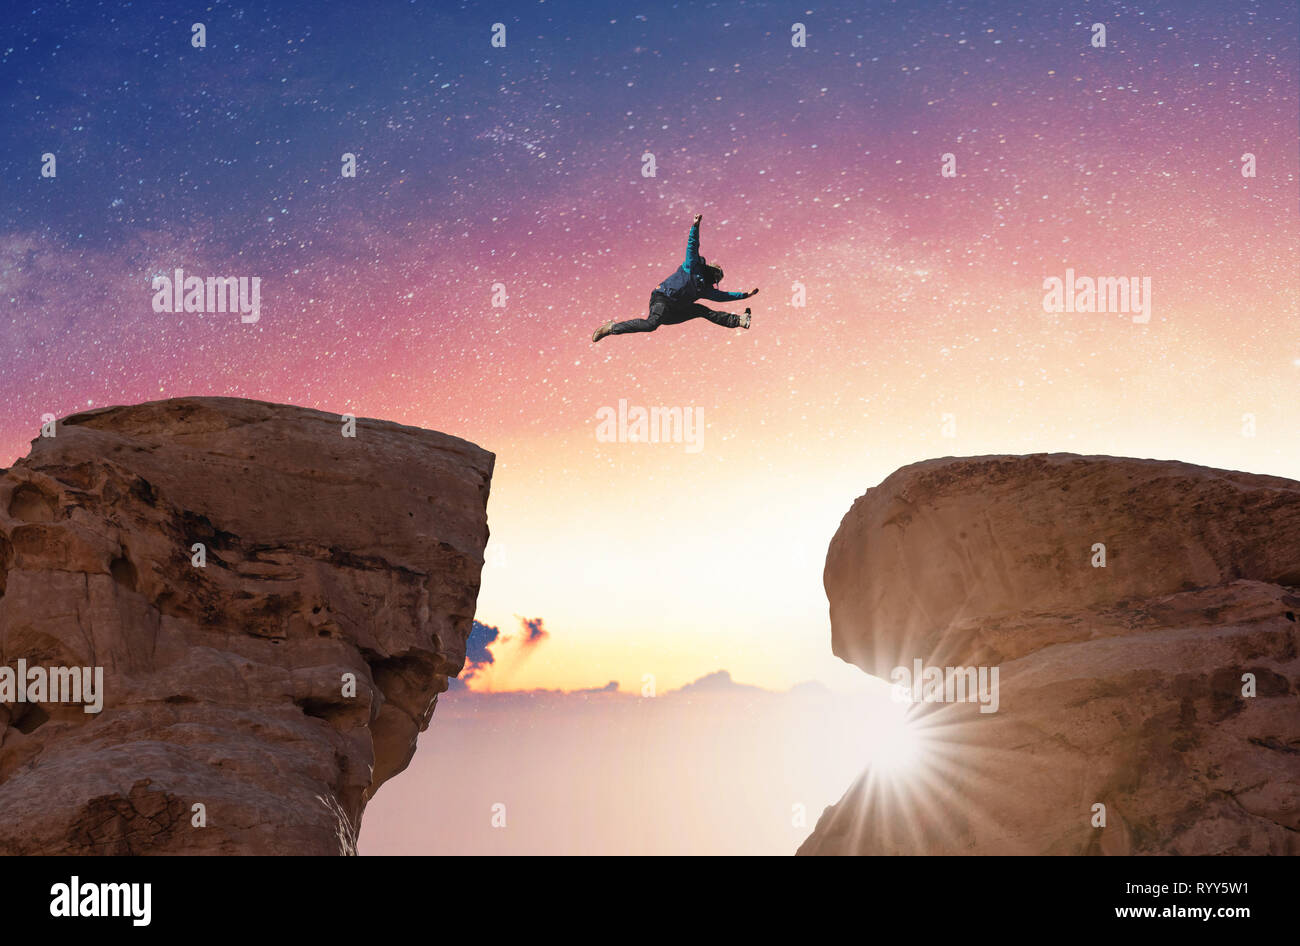 Défi, le risque, la liberté et l'imagination concept. Une Silhouette man jumping over précipice crossing cliff Banque D'Images